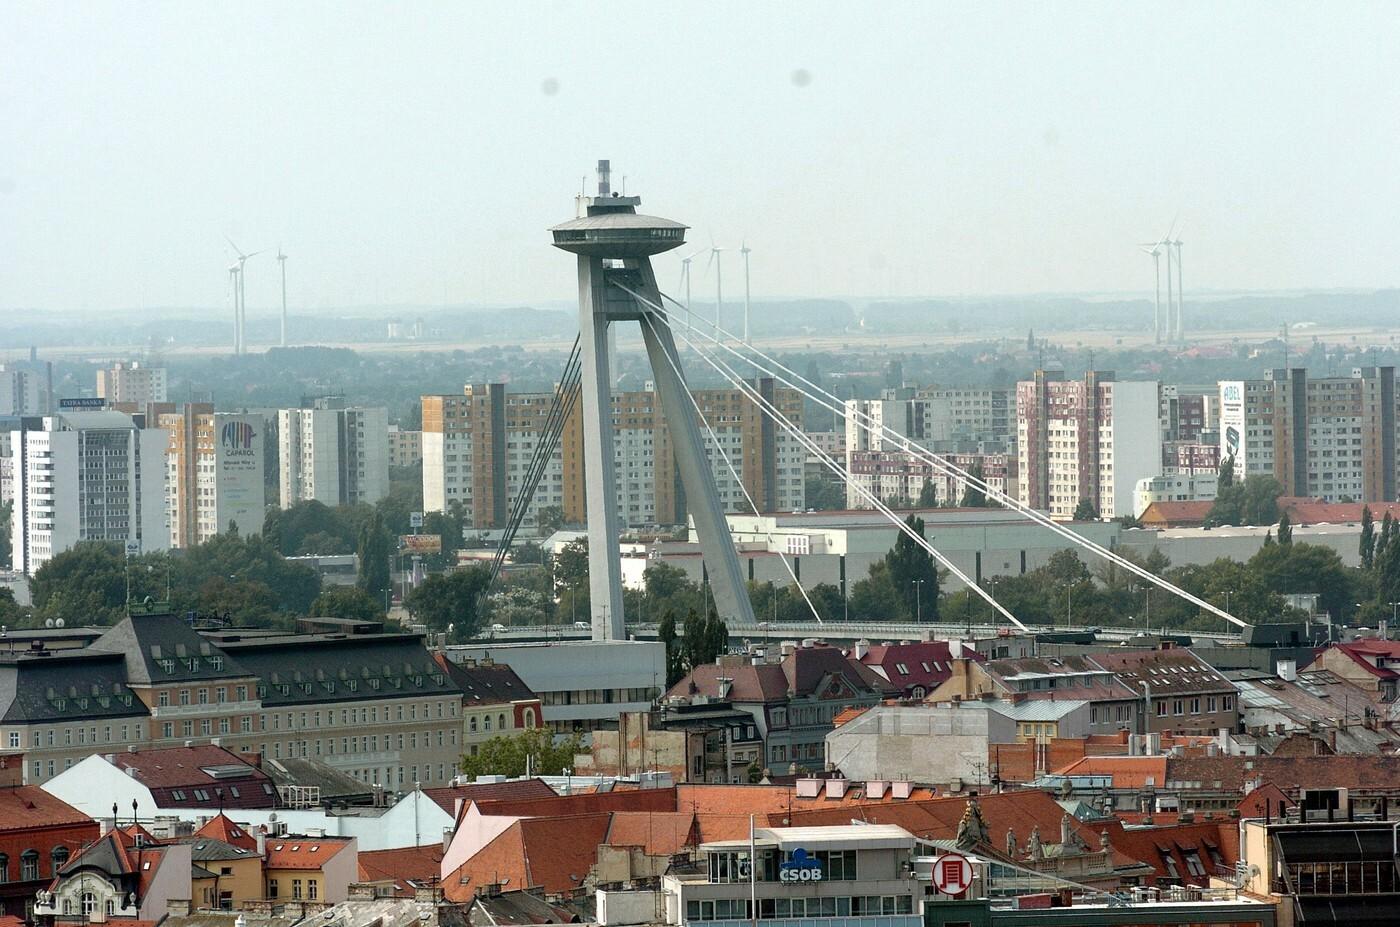 Bývanie v Bratislave je drahšie, nájomné sa zvyšuje. Hodnota rastie aj starším bytom